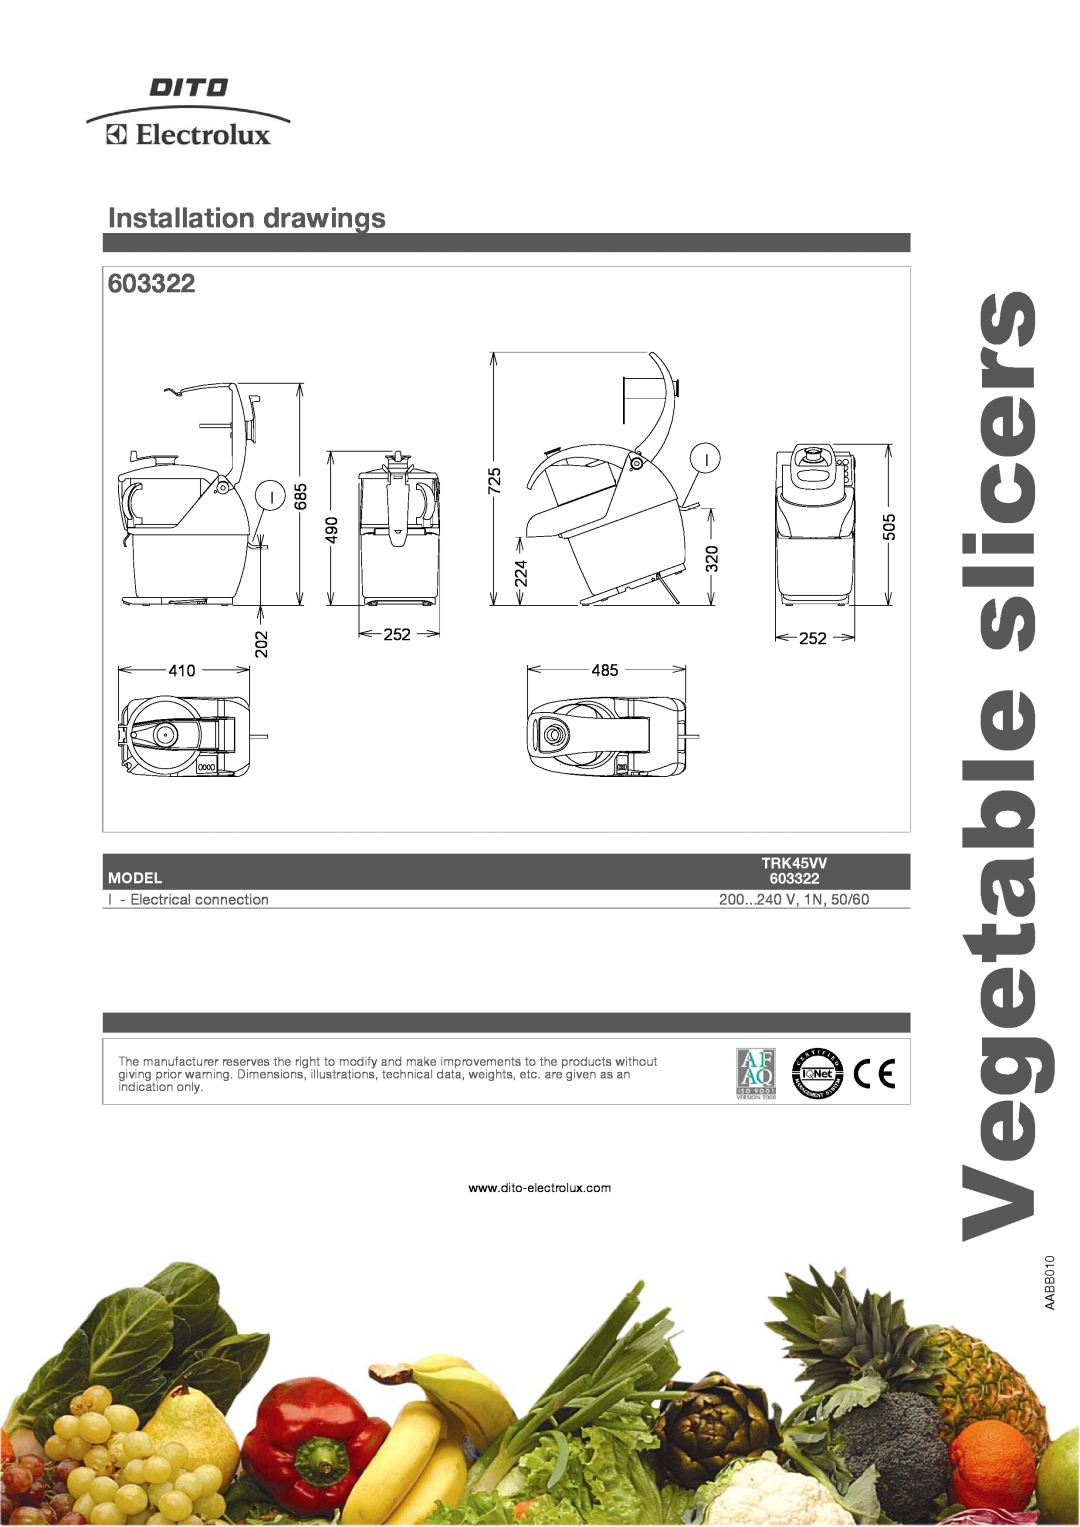 Electrolux TRK45VV slicers, Vegetable, 603322, 490 202, 725 224, Model, 200...240 V, 1N, 50/60, Installation drawings 